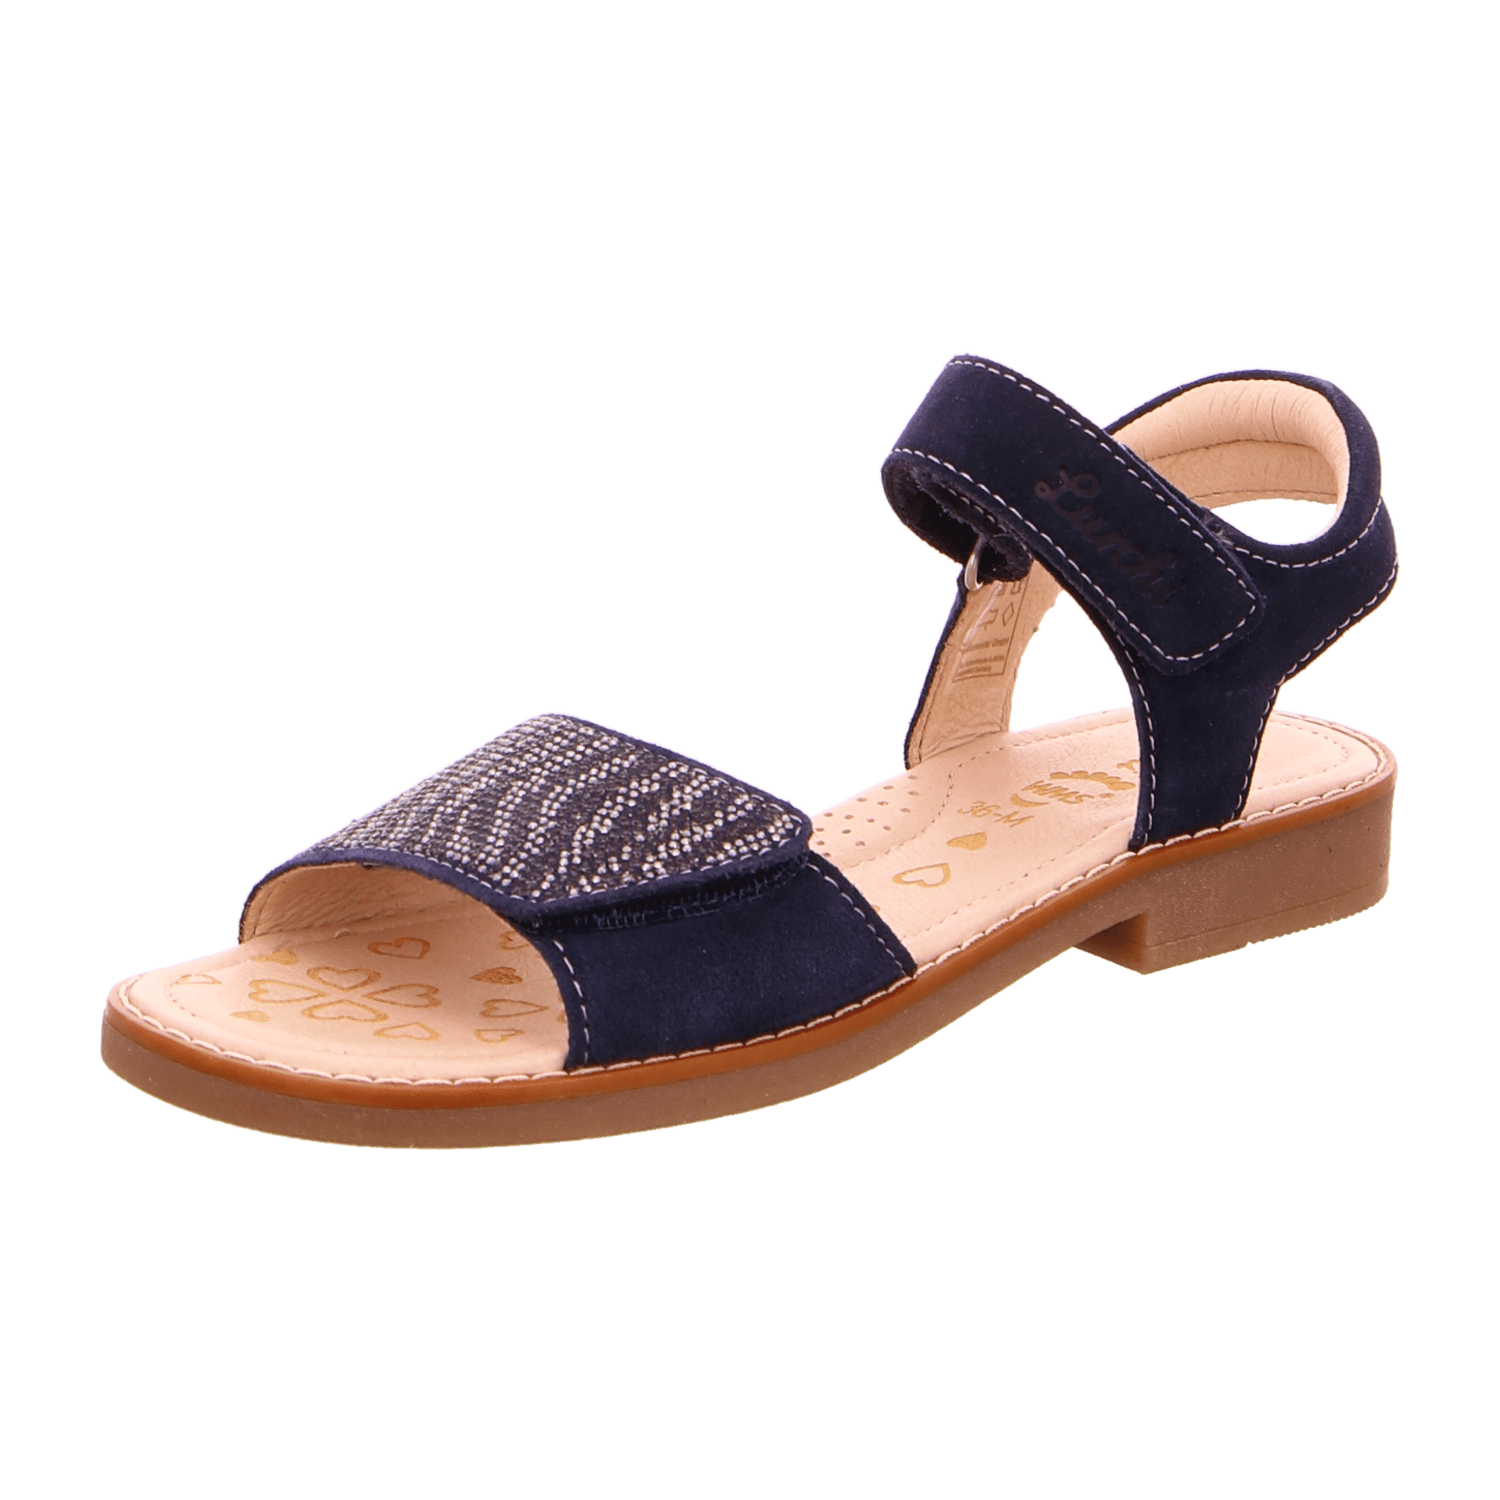 Kinder Lurchi kaufen für Sandalen Mädchen